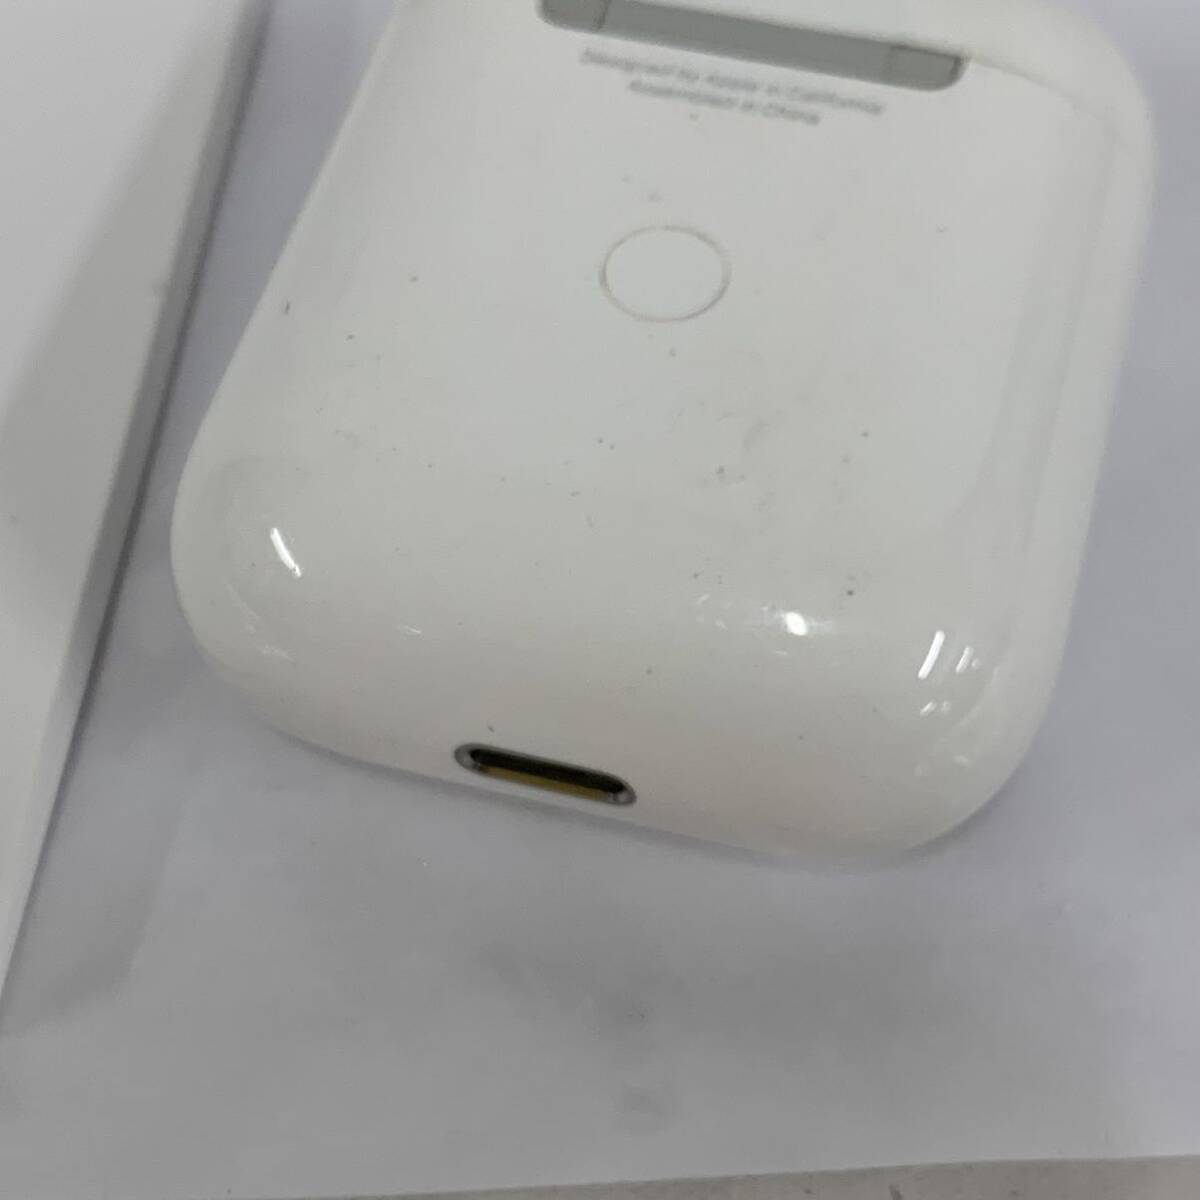  текущее состояние товар AirPods воздушный poz no. 2 поколение A2032 Apple коробка есть Apple беспроводной слуховай аппарат ka15